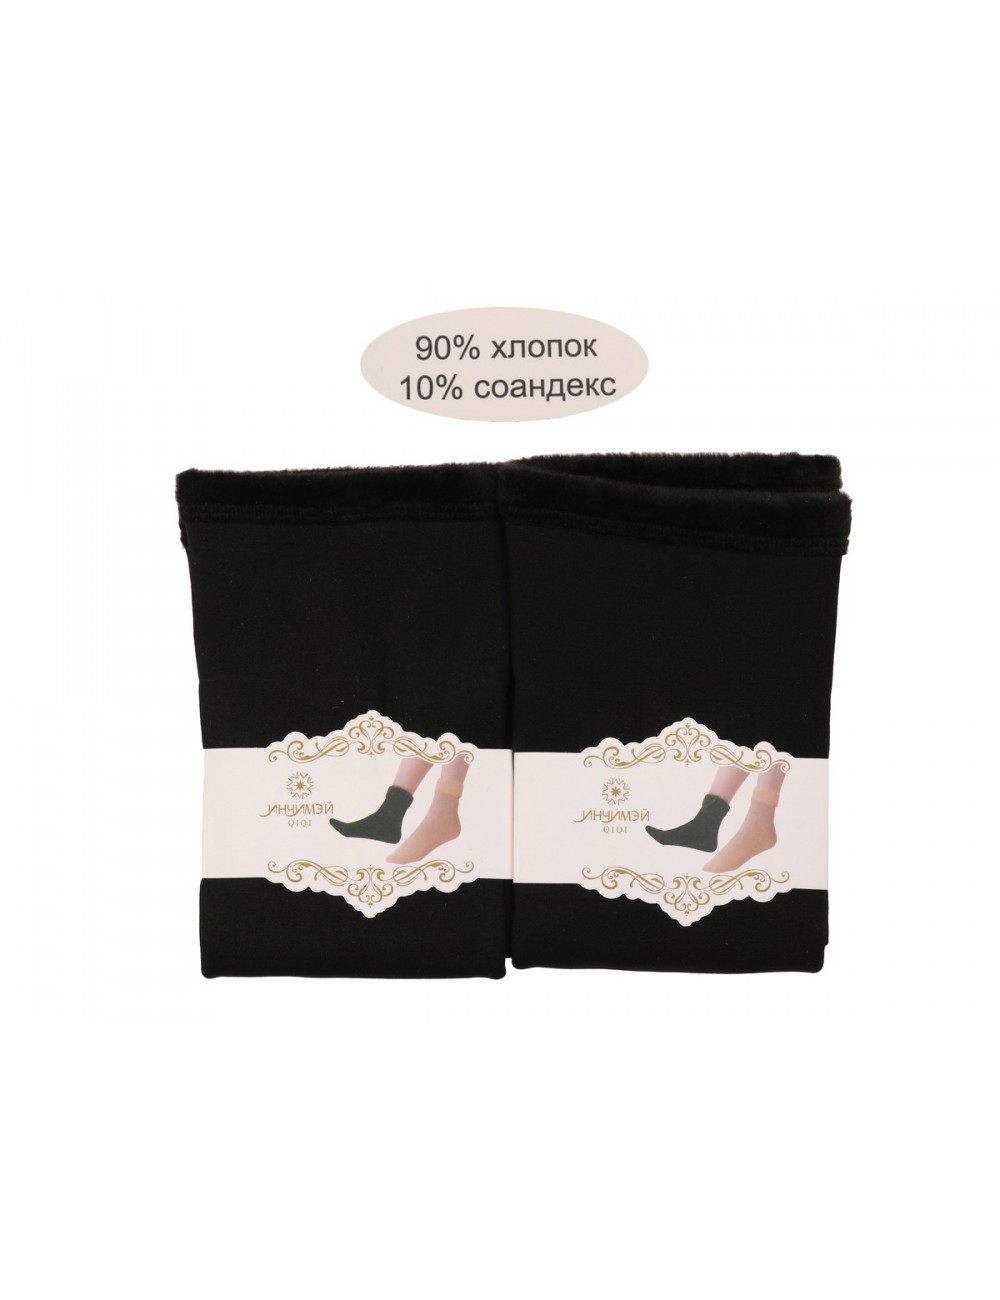 Носки женские бесшовные, мех внутри НМЗ-136